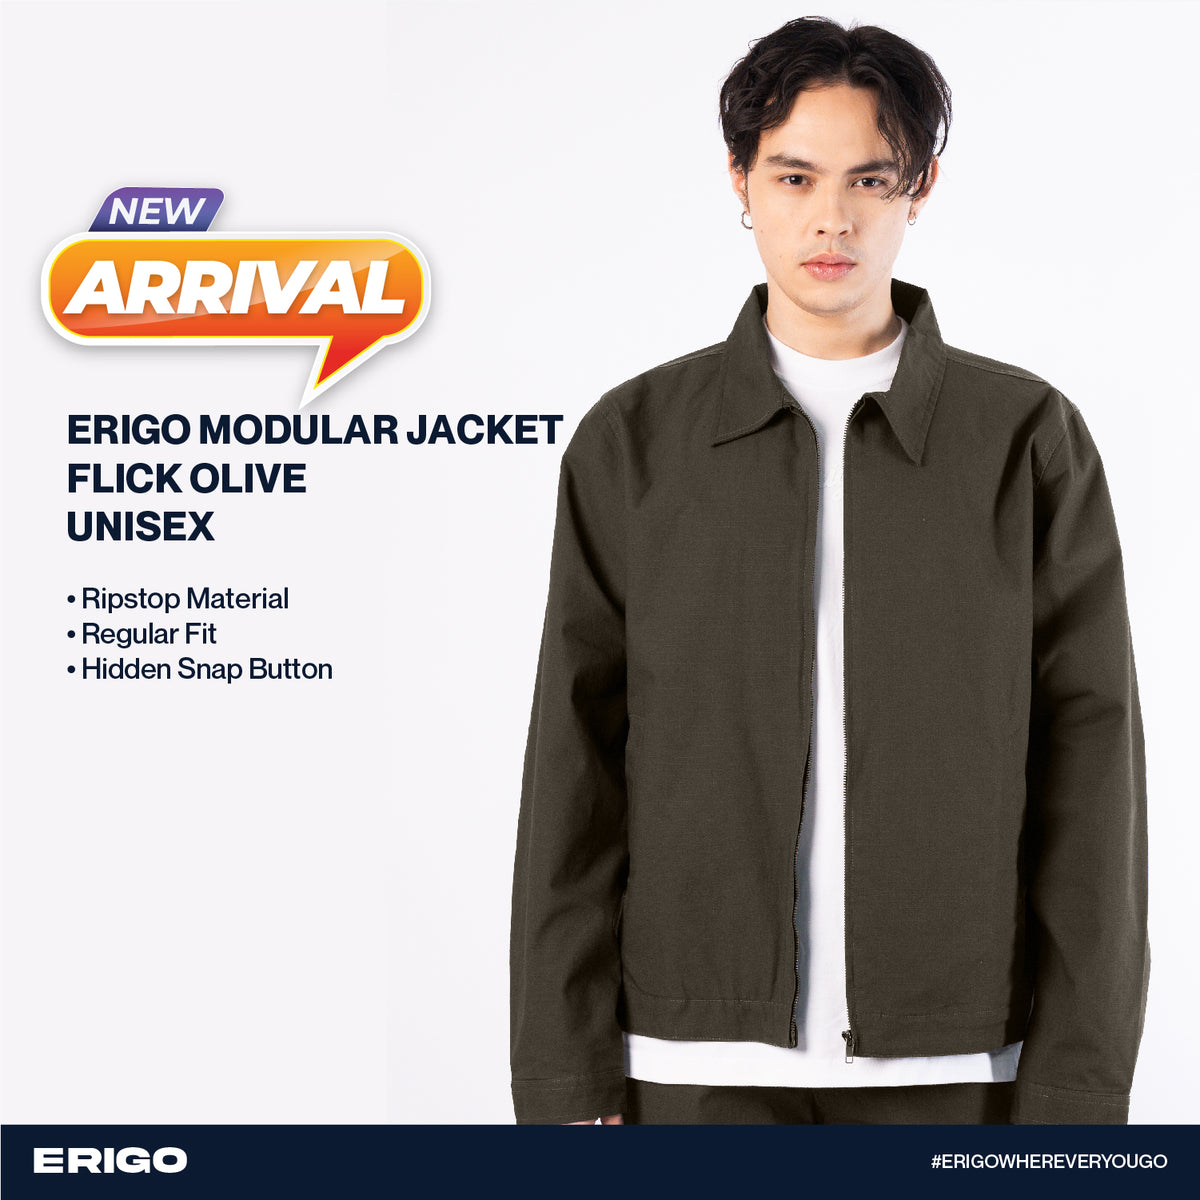 Erigo Modular Jacket Flick Olive Unisex